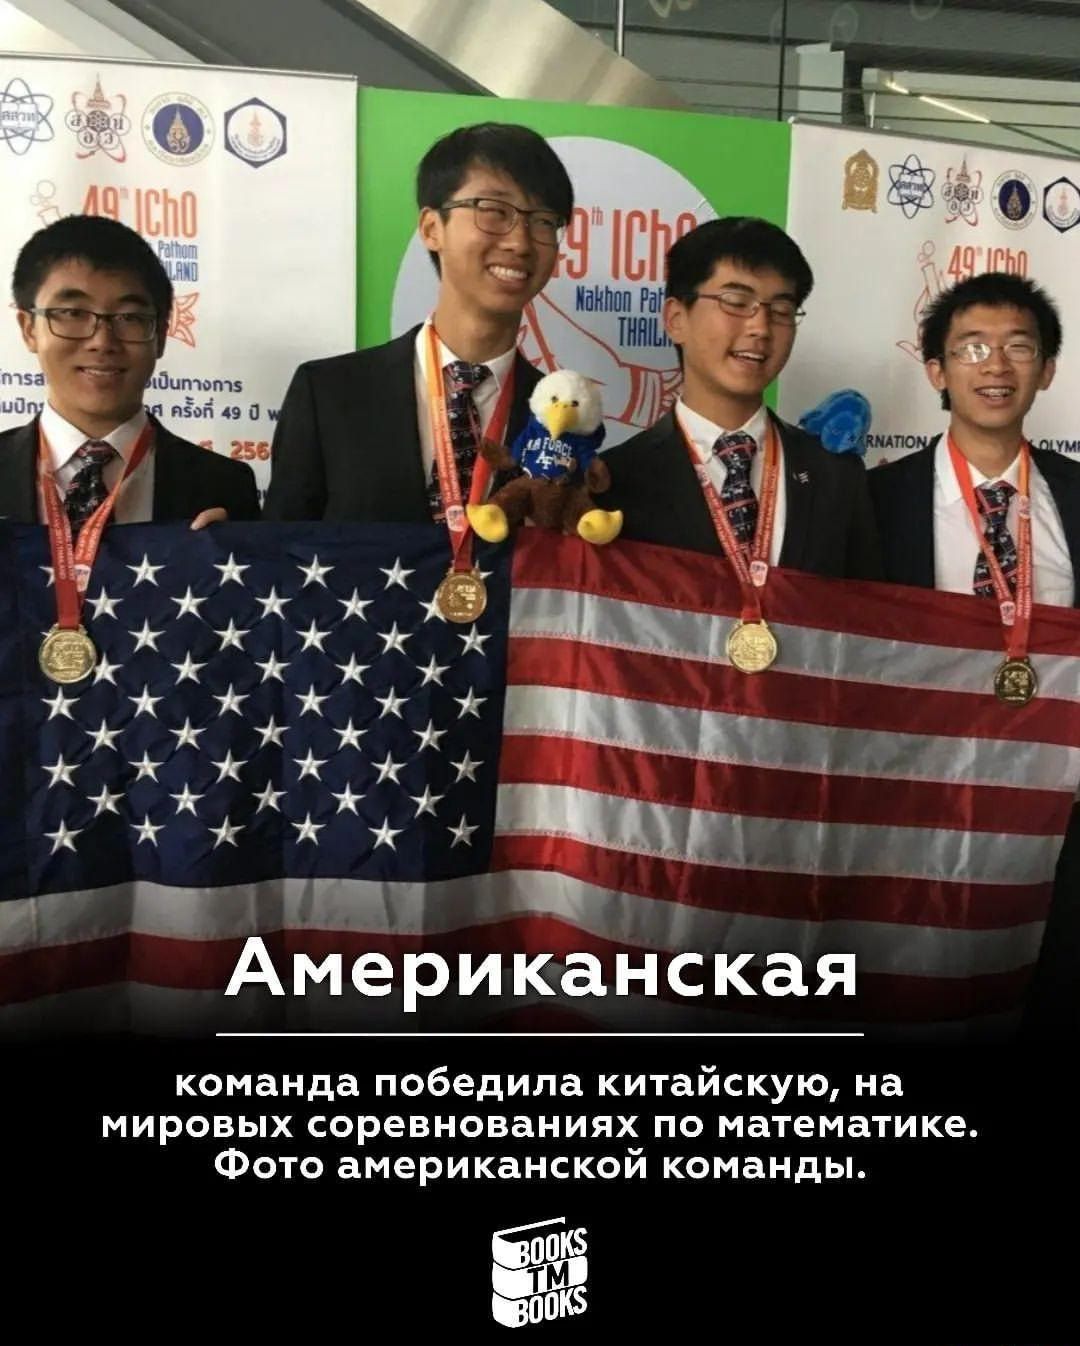 ъ ъ 55 ч7 ъ ъ ъ ъ ъ юююь внюююъ ч Американская команда победила китайскую на мировых соревнованиях по математике Фото американской команды а 53